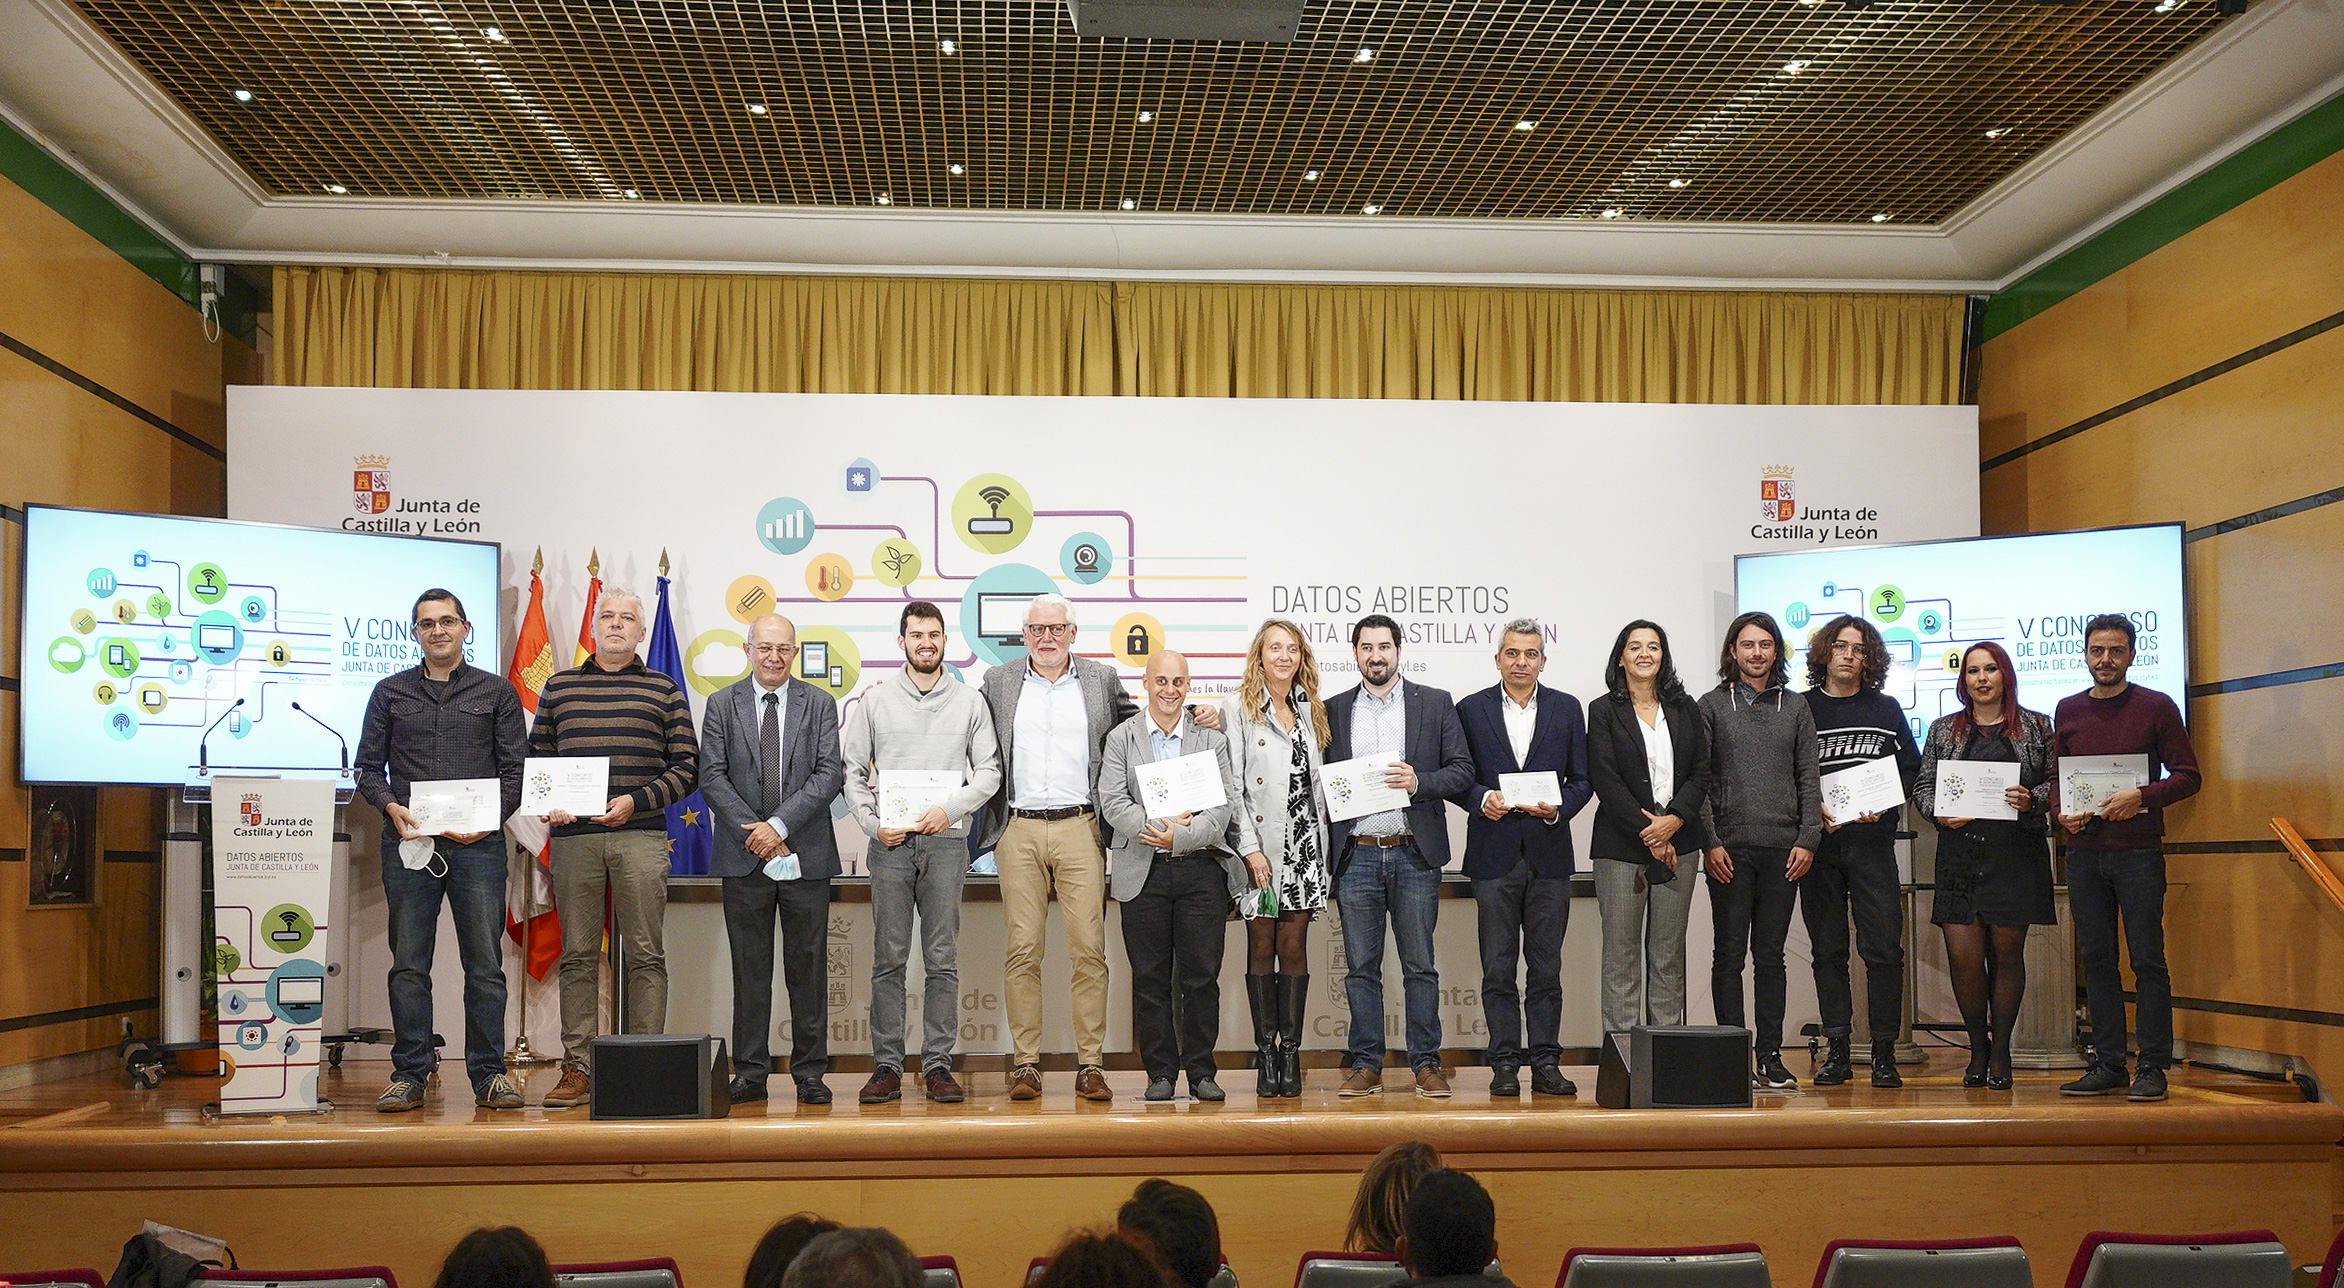 Ganadores del V Concurso de Datos Abiertos de Castilla y León